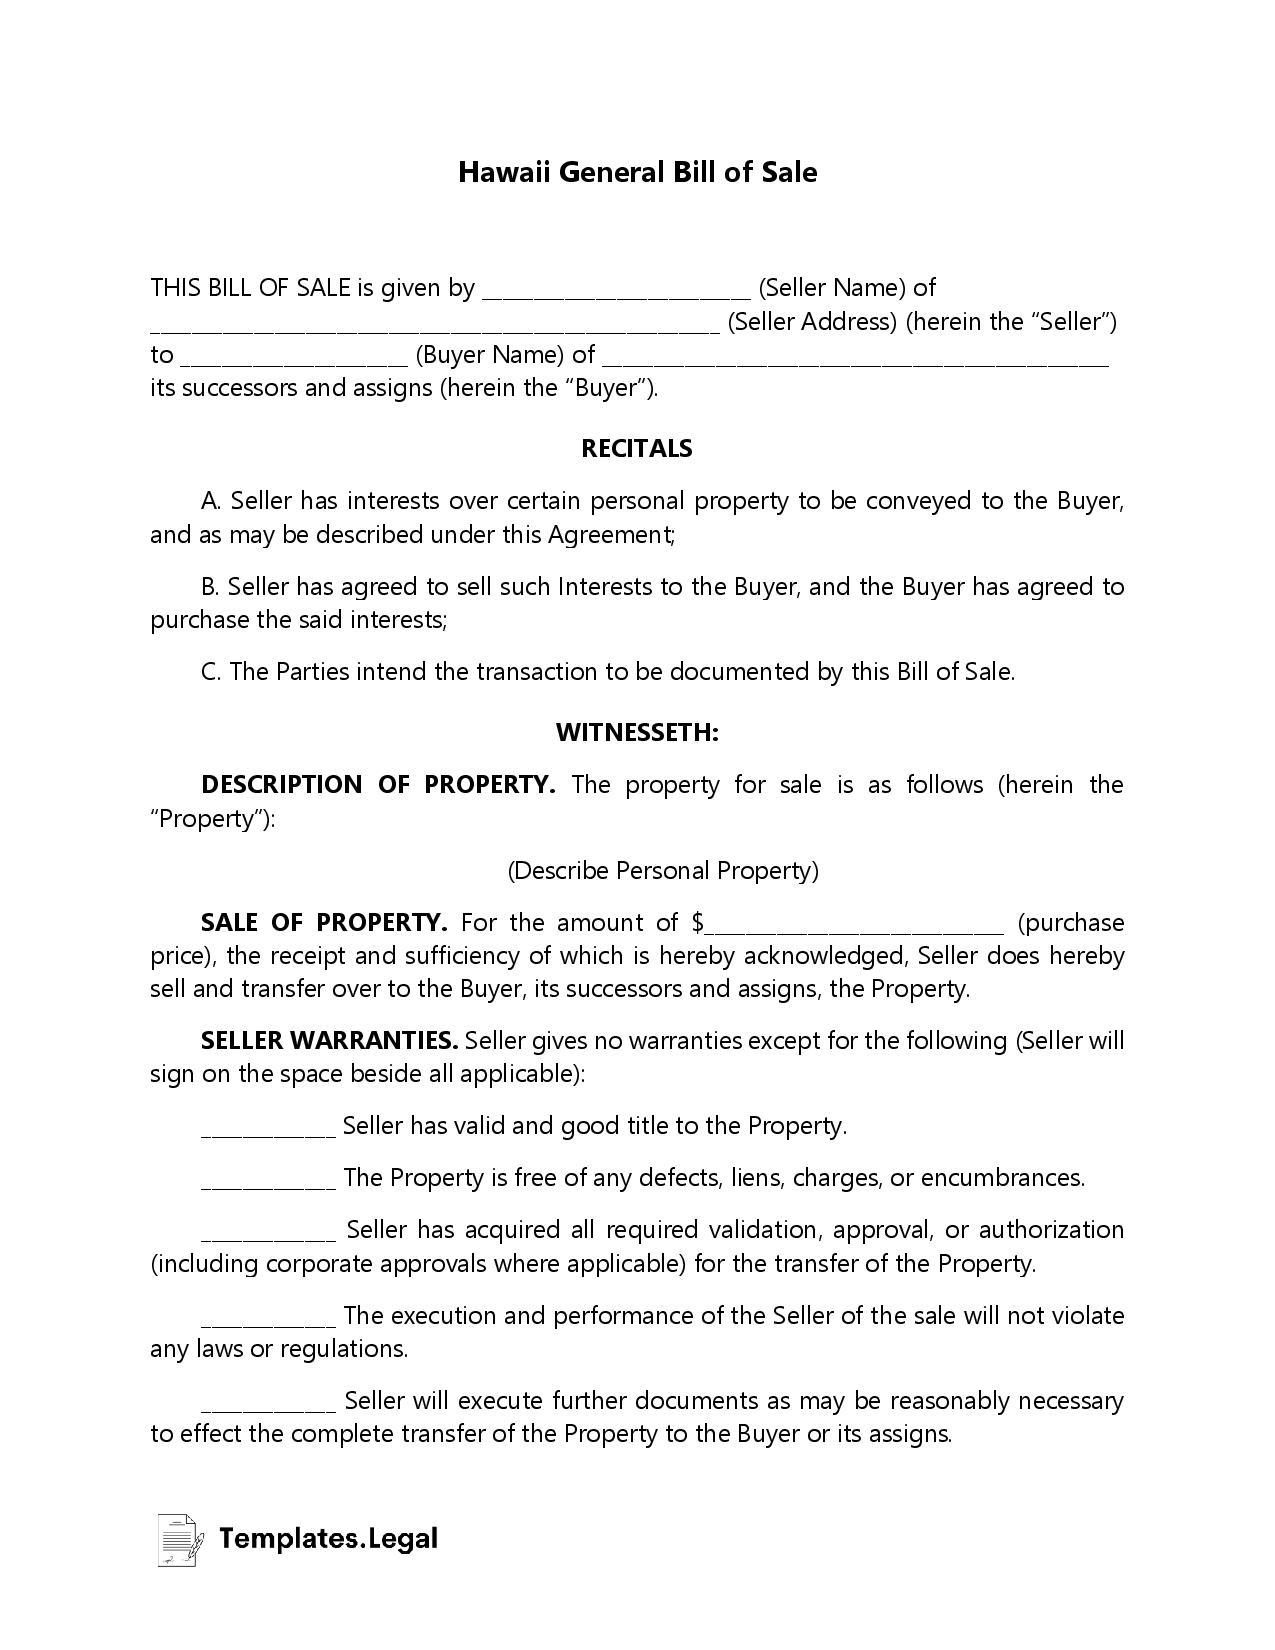 Hawaii General Bill of Sale - Templates.Legal